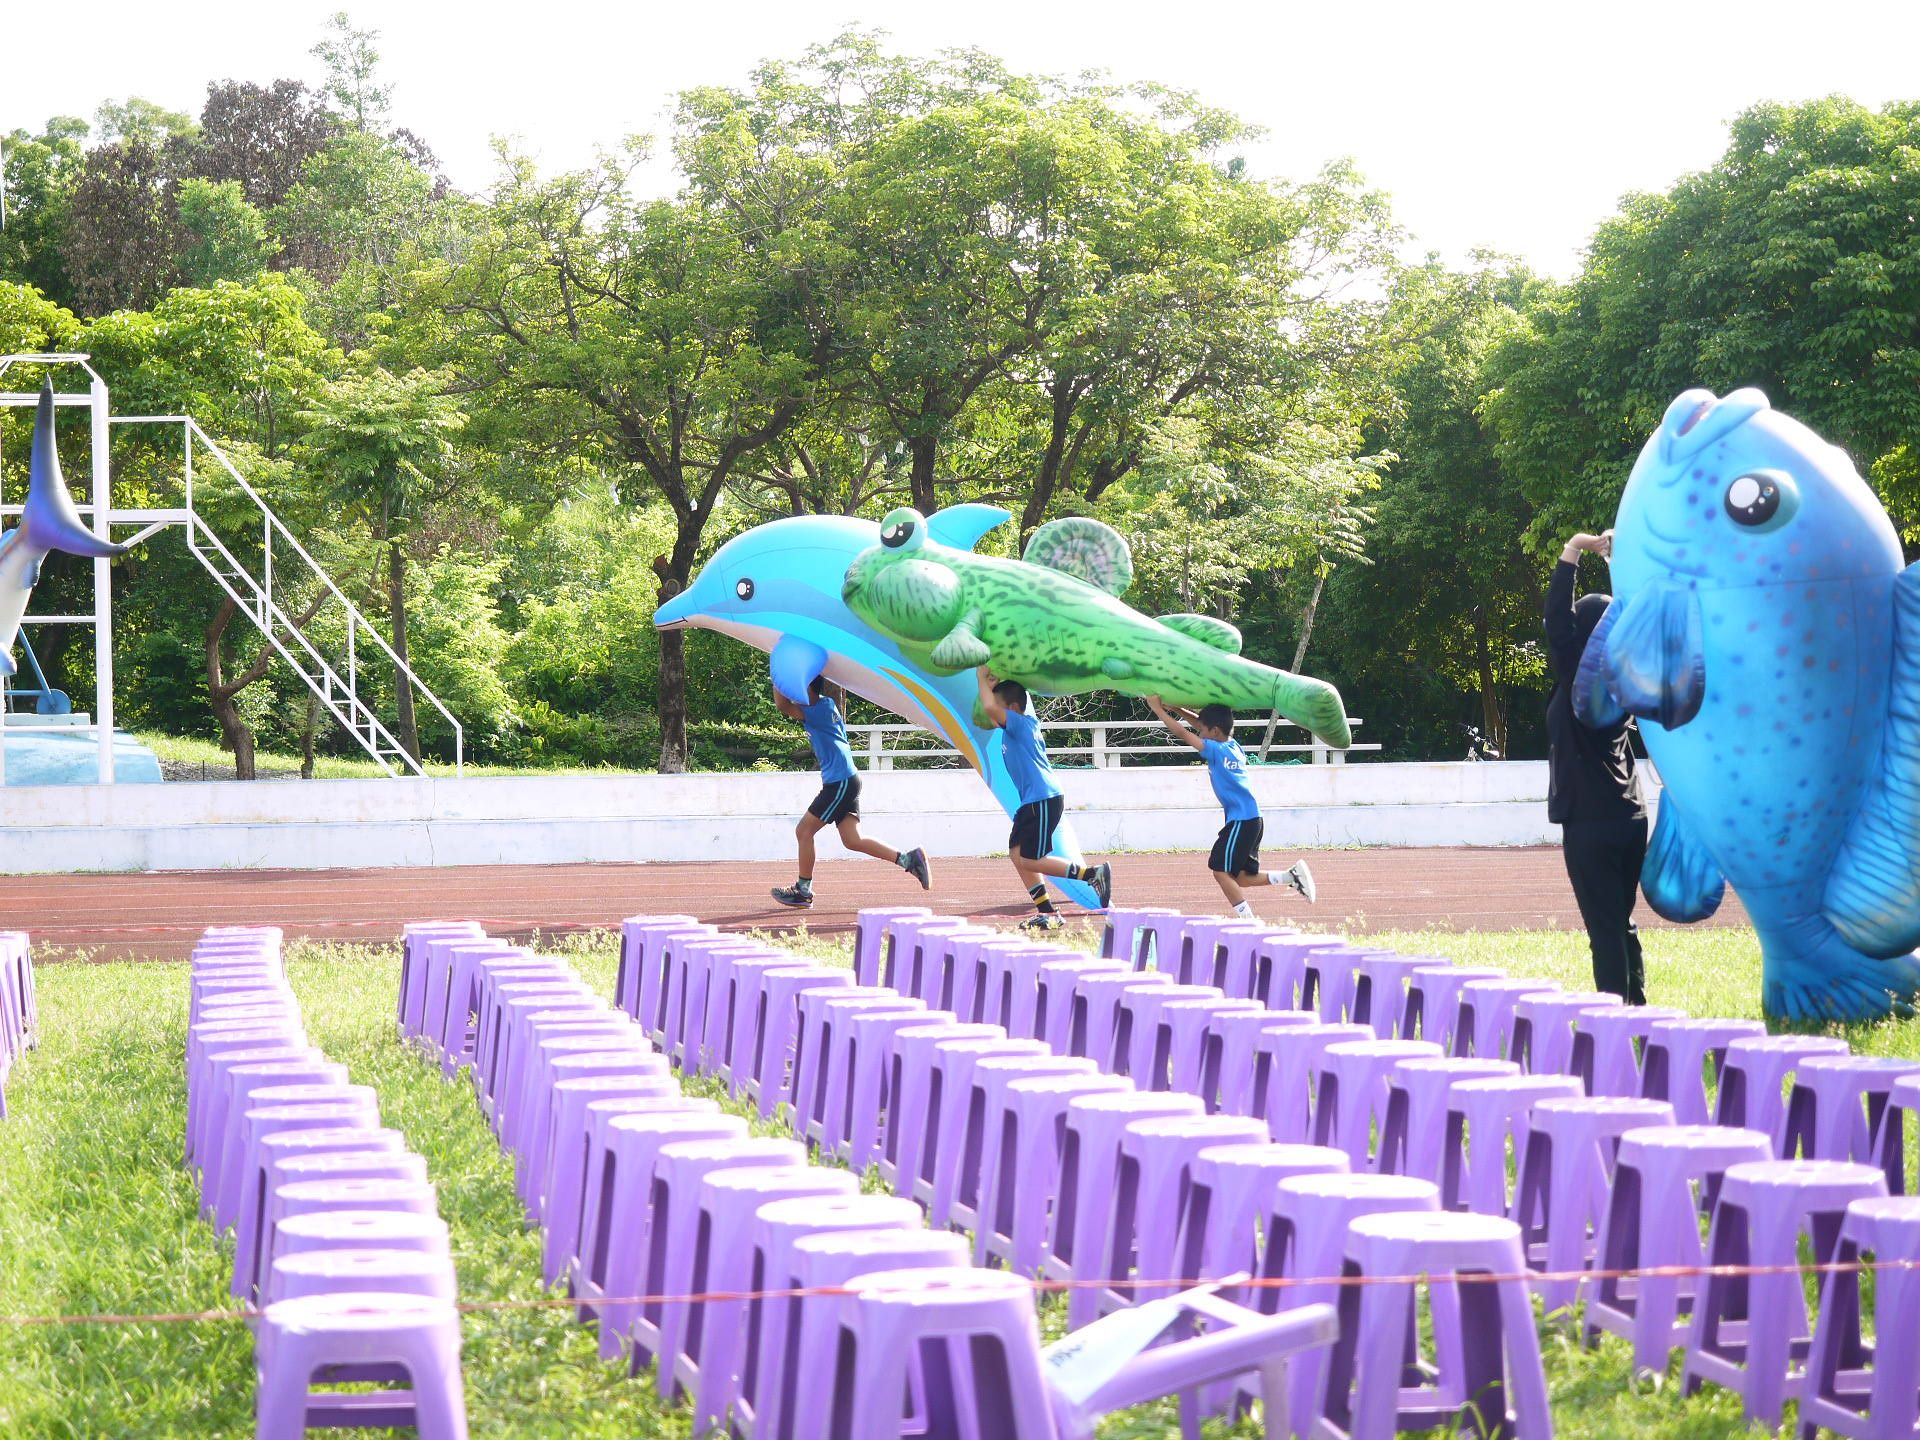  「紙風車368兒童藝術工程」18年巡迴台灣兩輪 宣布第3輪即將起跑 